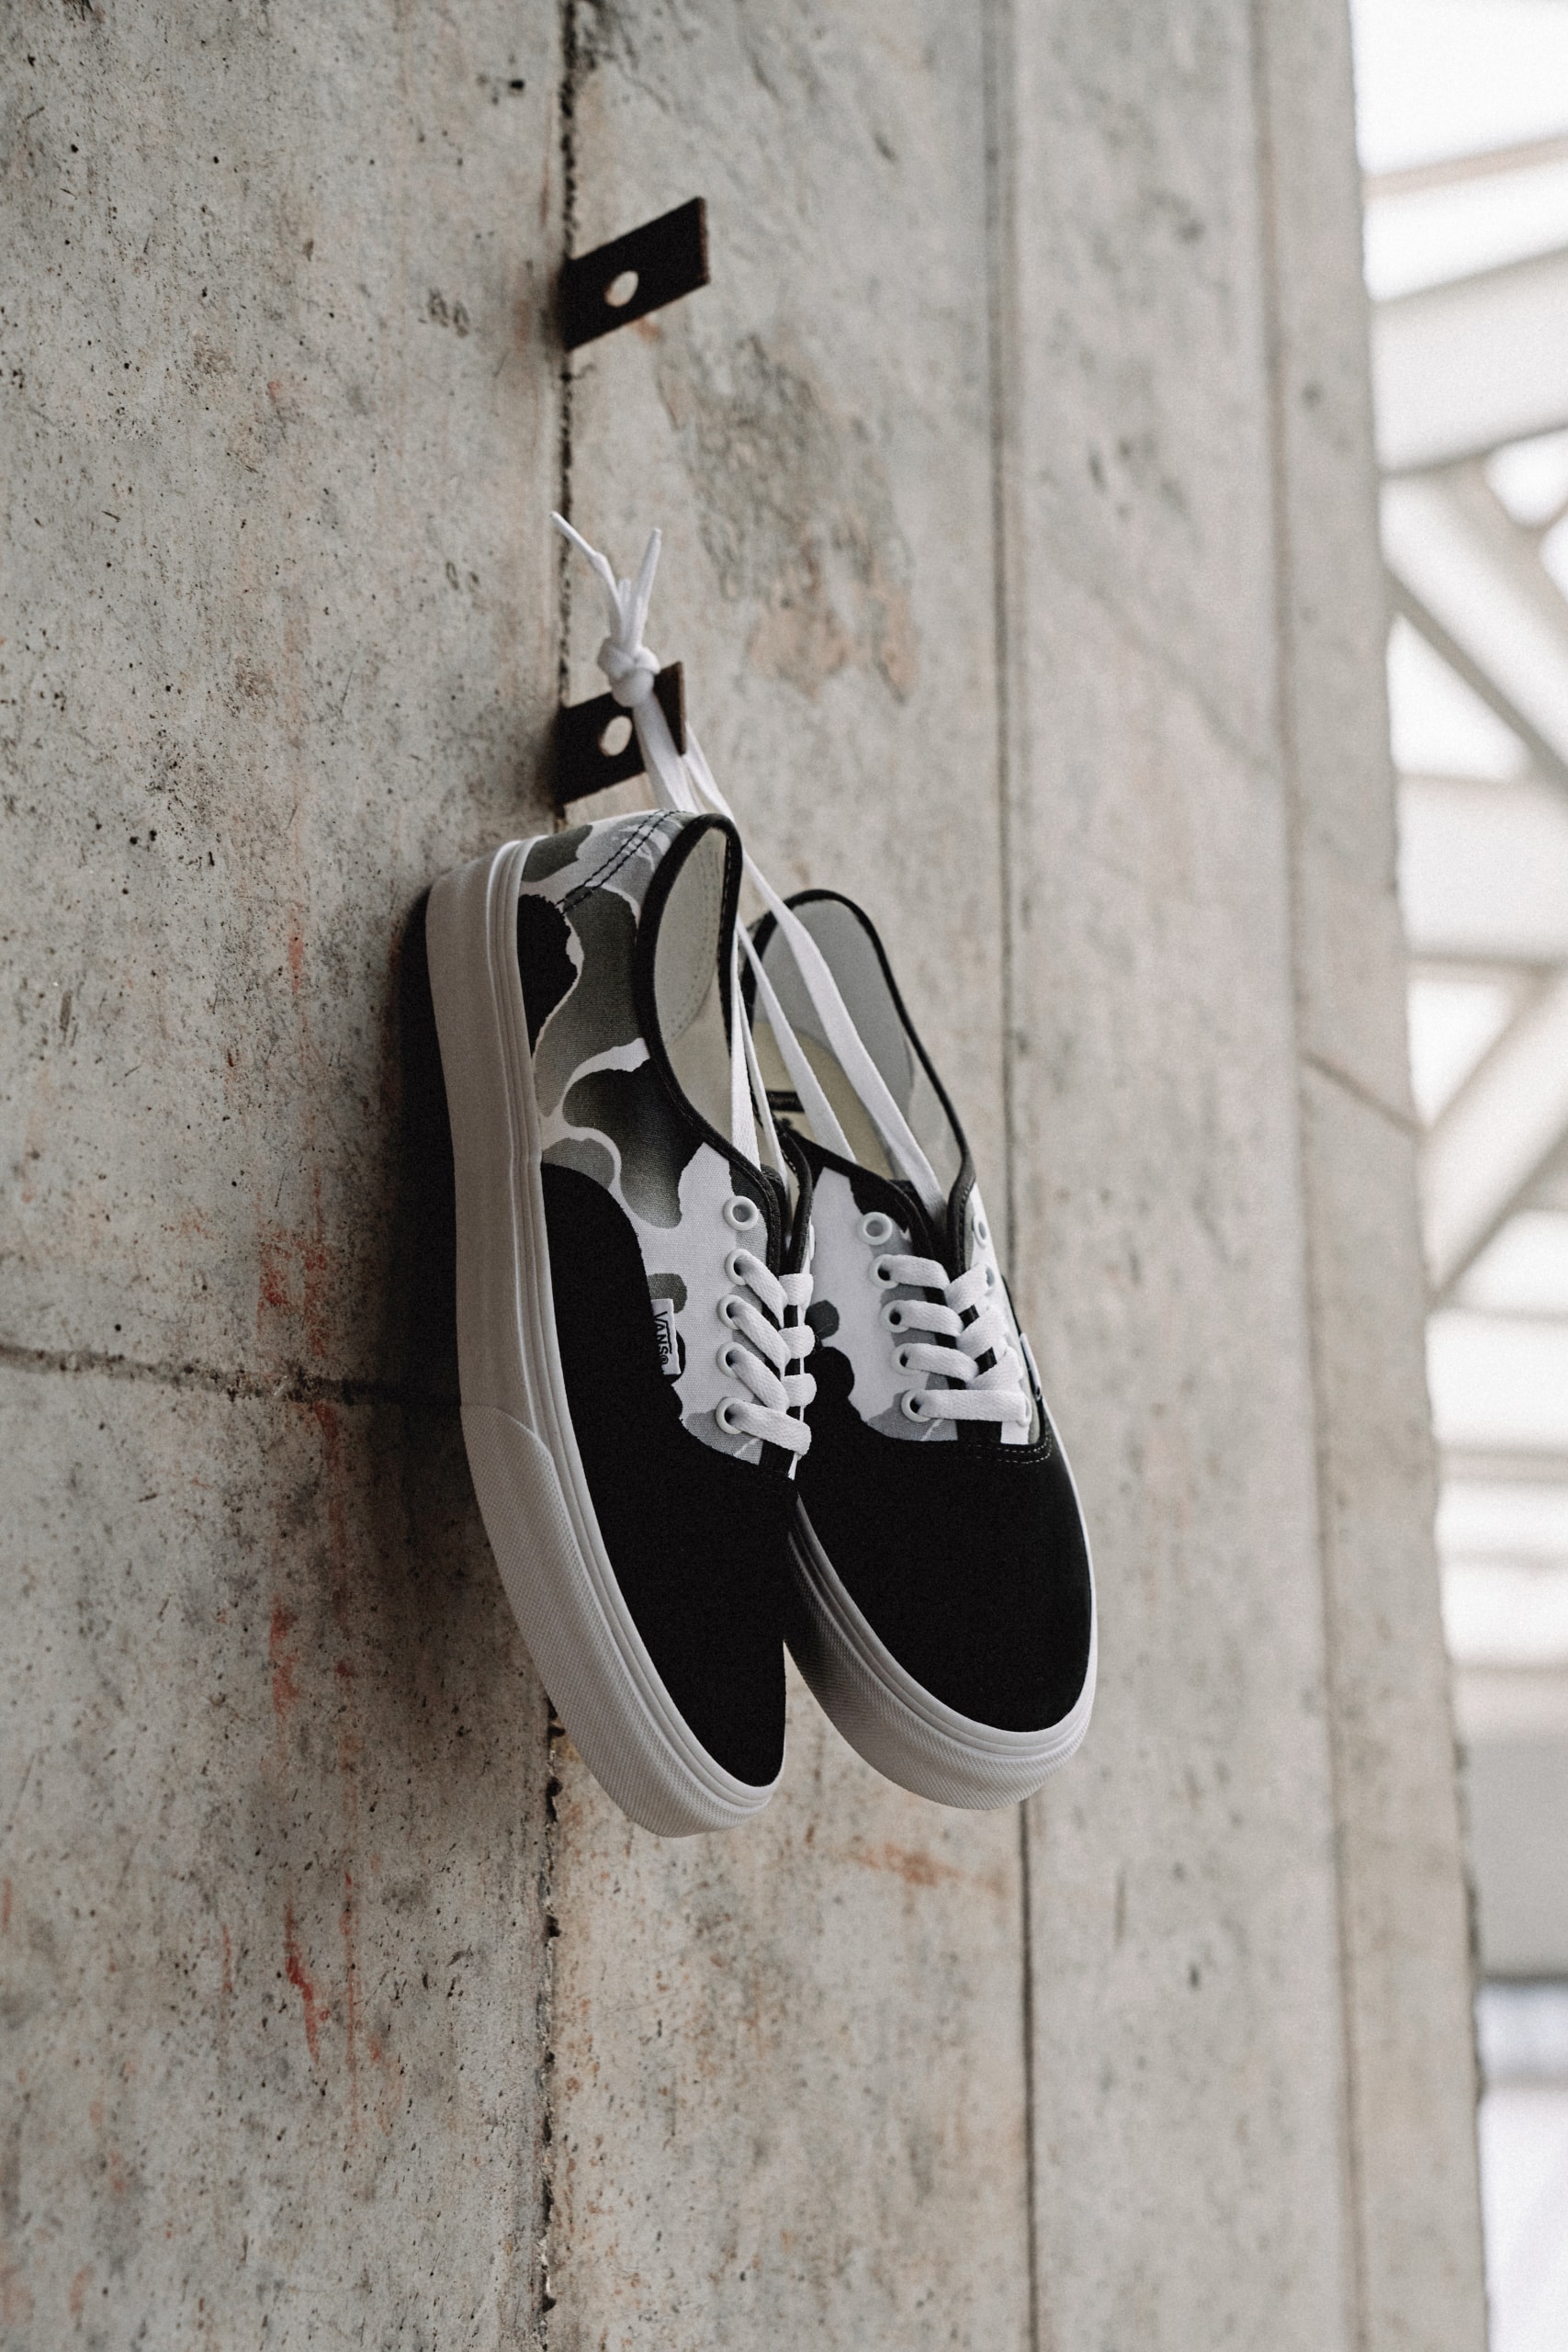 Vans 自由定制鞋平台推出 BAPE® 限定联名迷彩印花系列